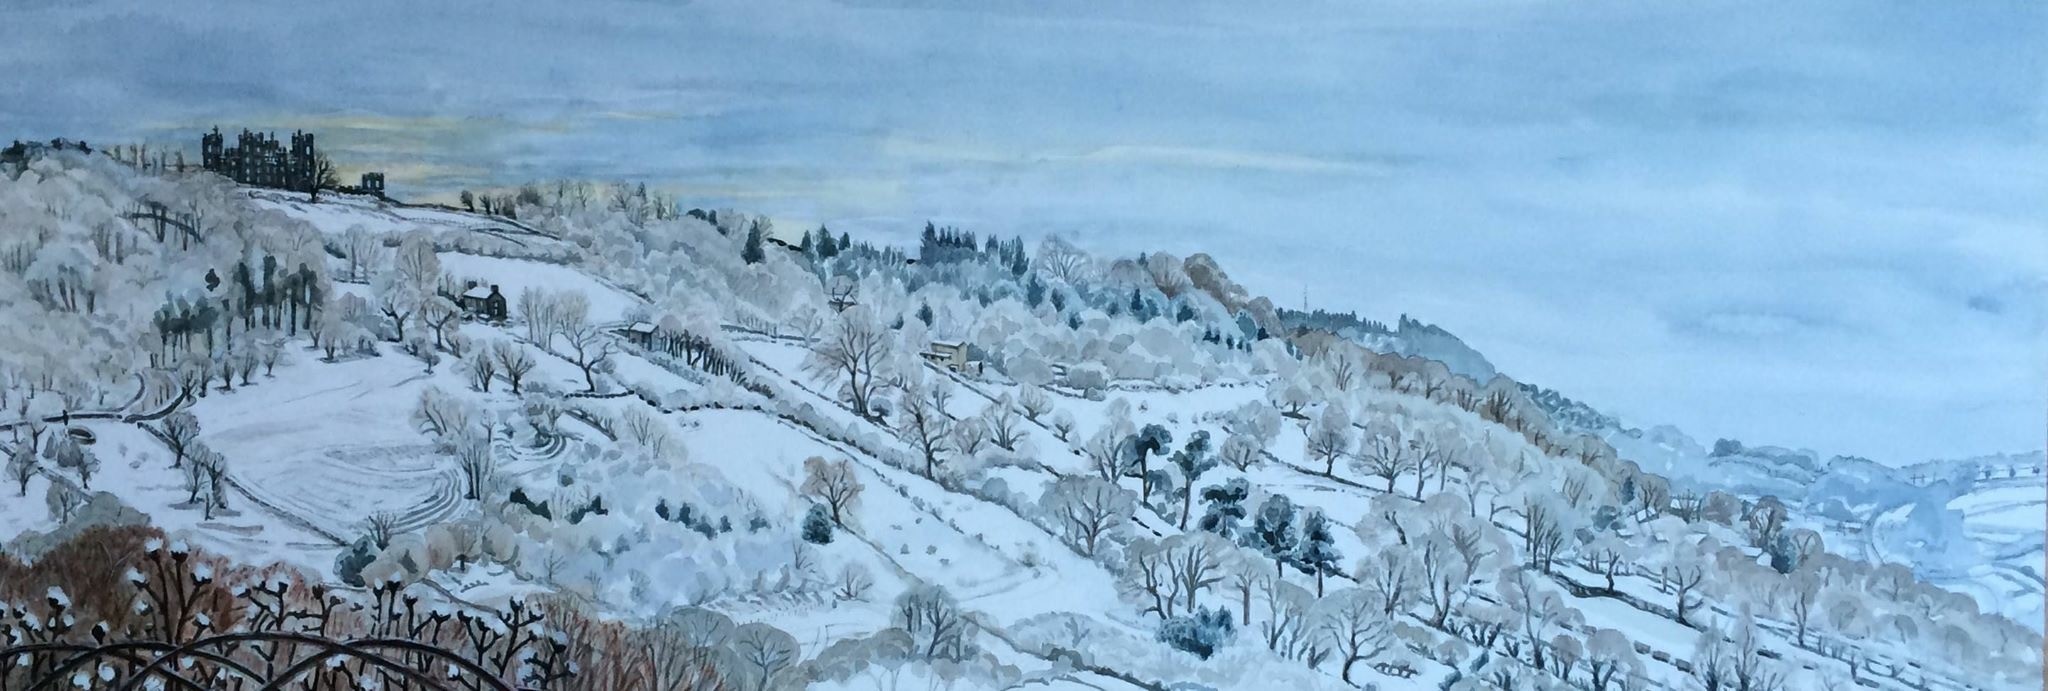 Sarah parkin  - Riber in Snow Long View